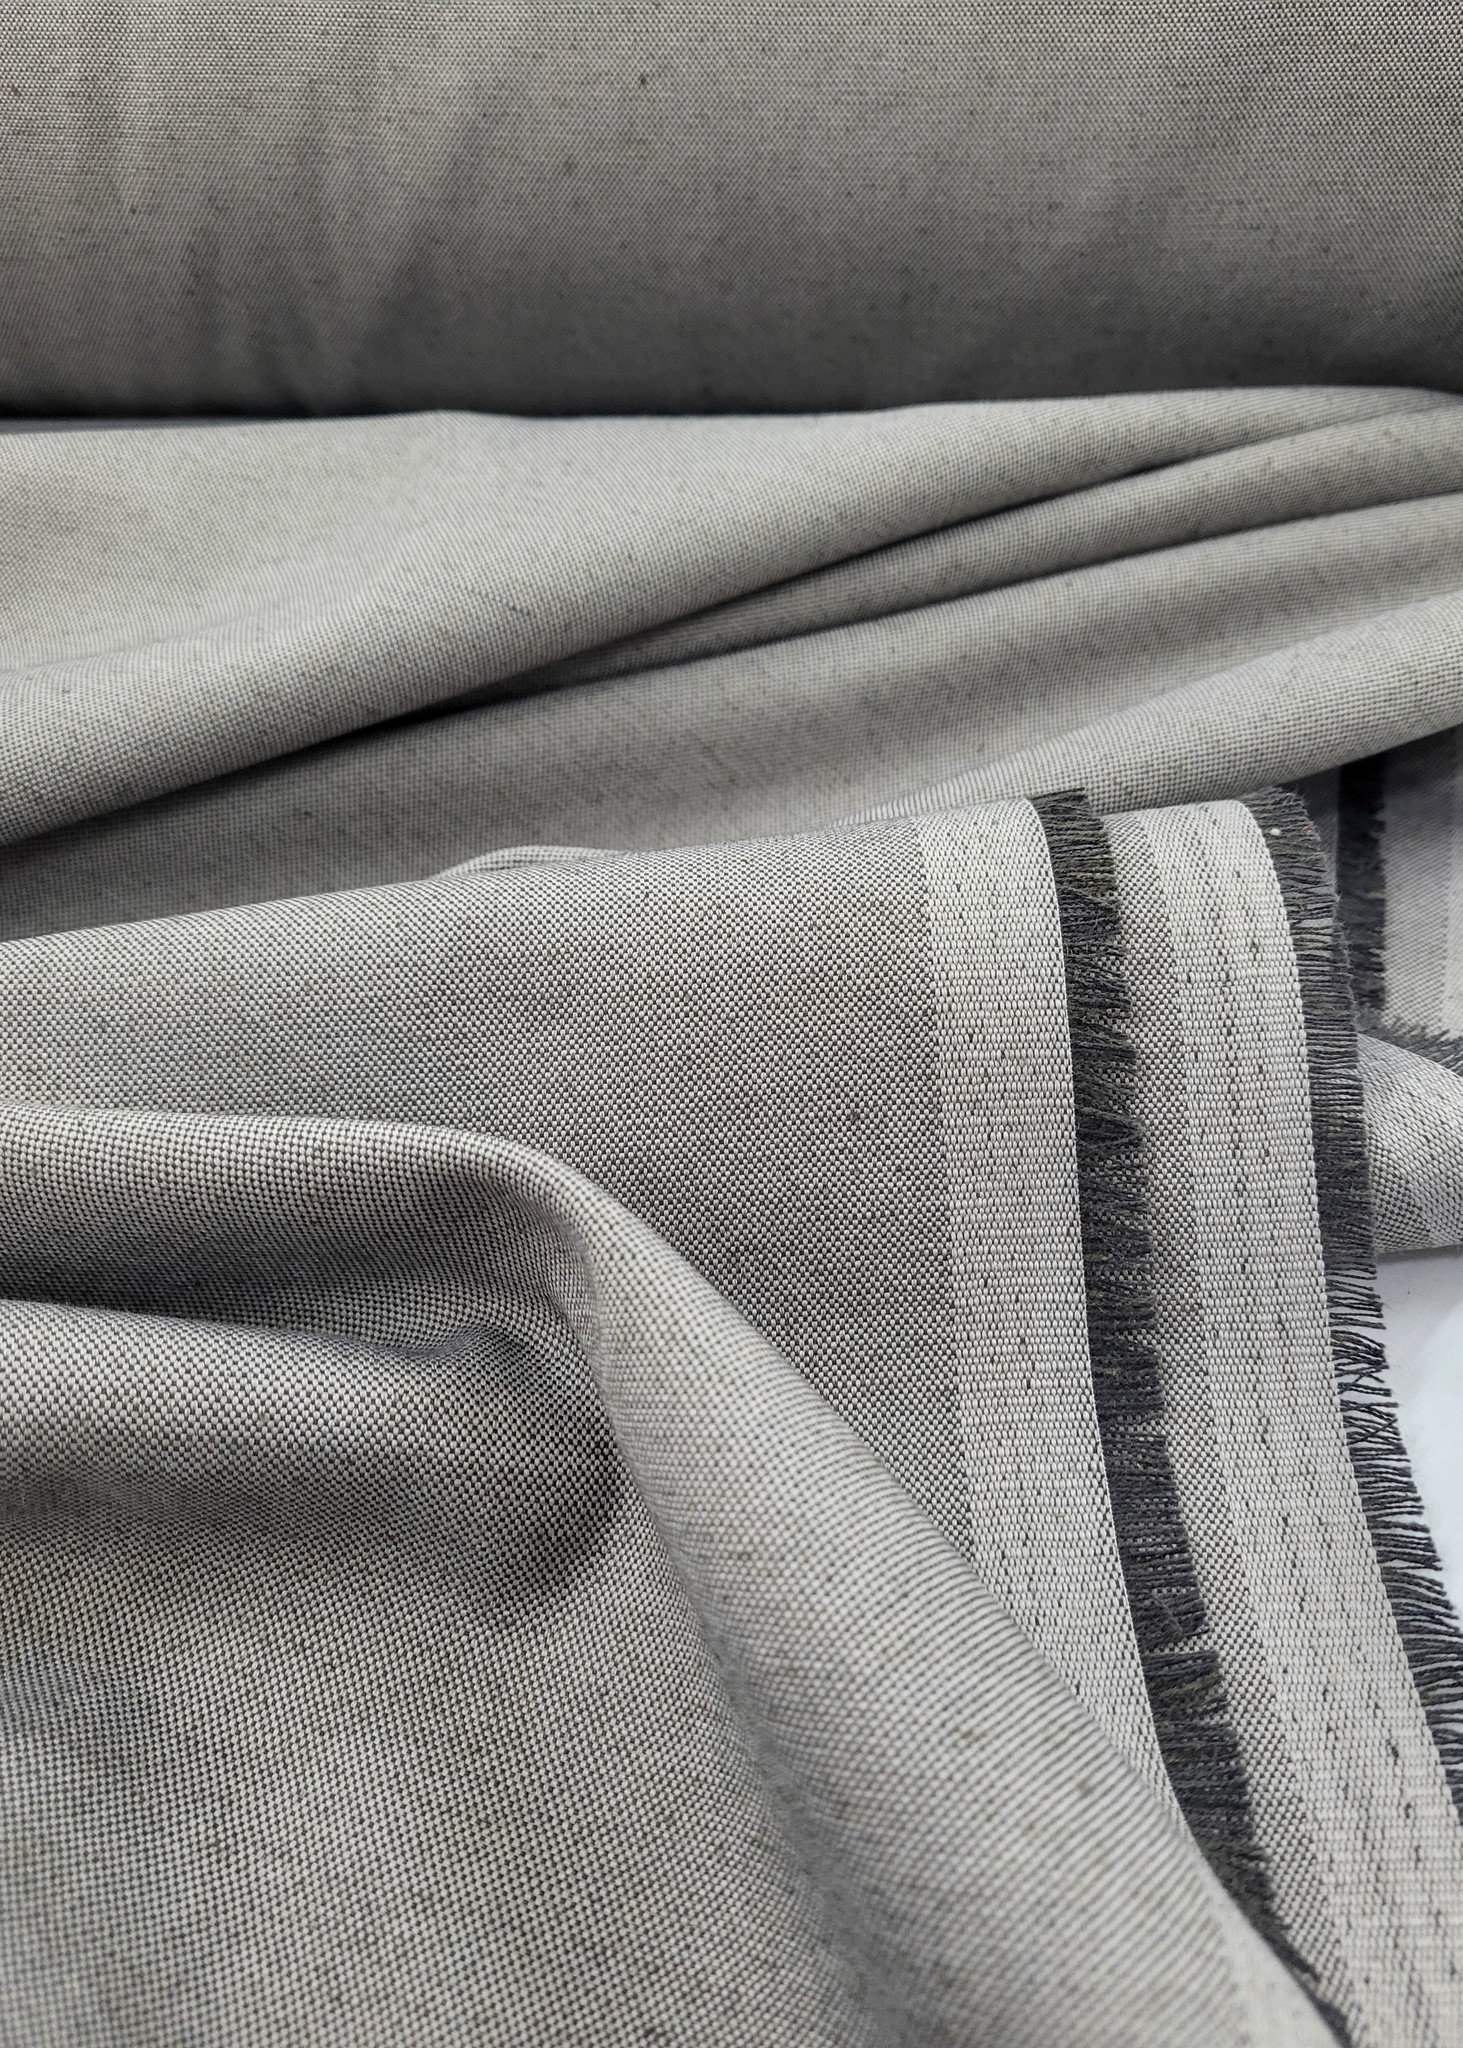 conservatief Koopje Bevestiging Mooie grijze stof op 280 cm breedte - ideaal voor gordijnen of interieur -  Madeline de stoffenmadam